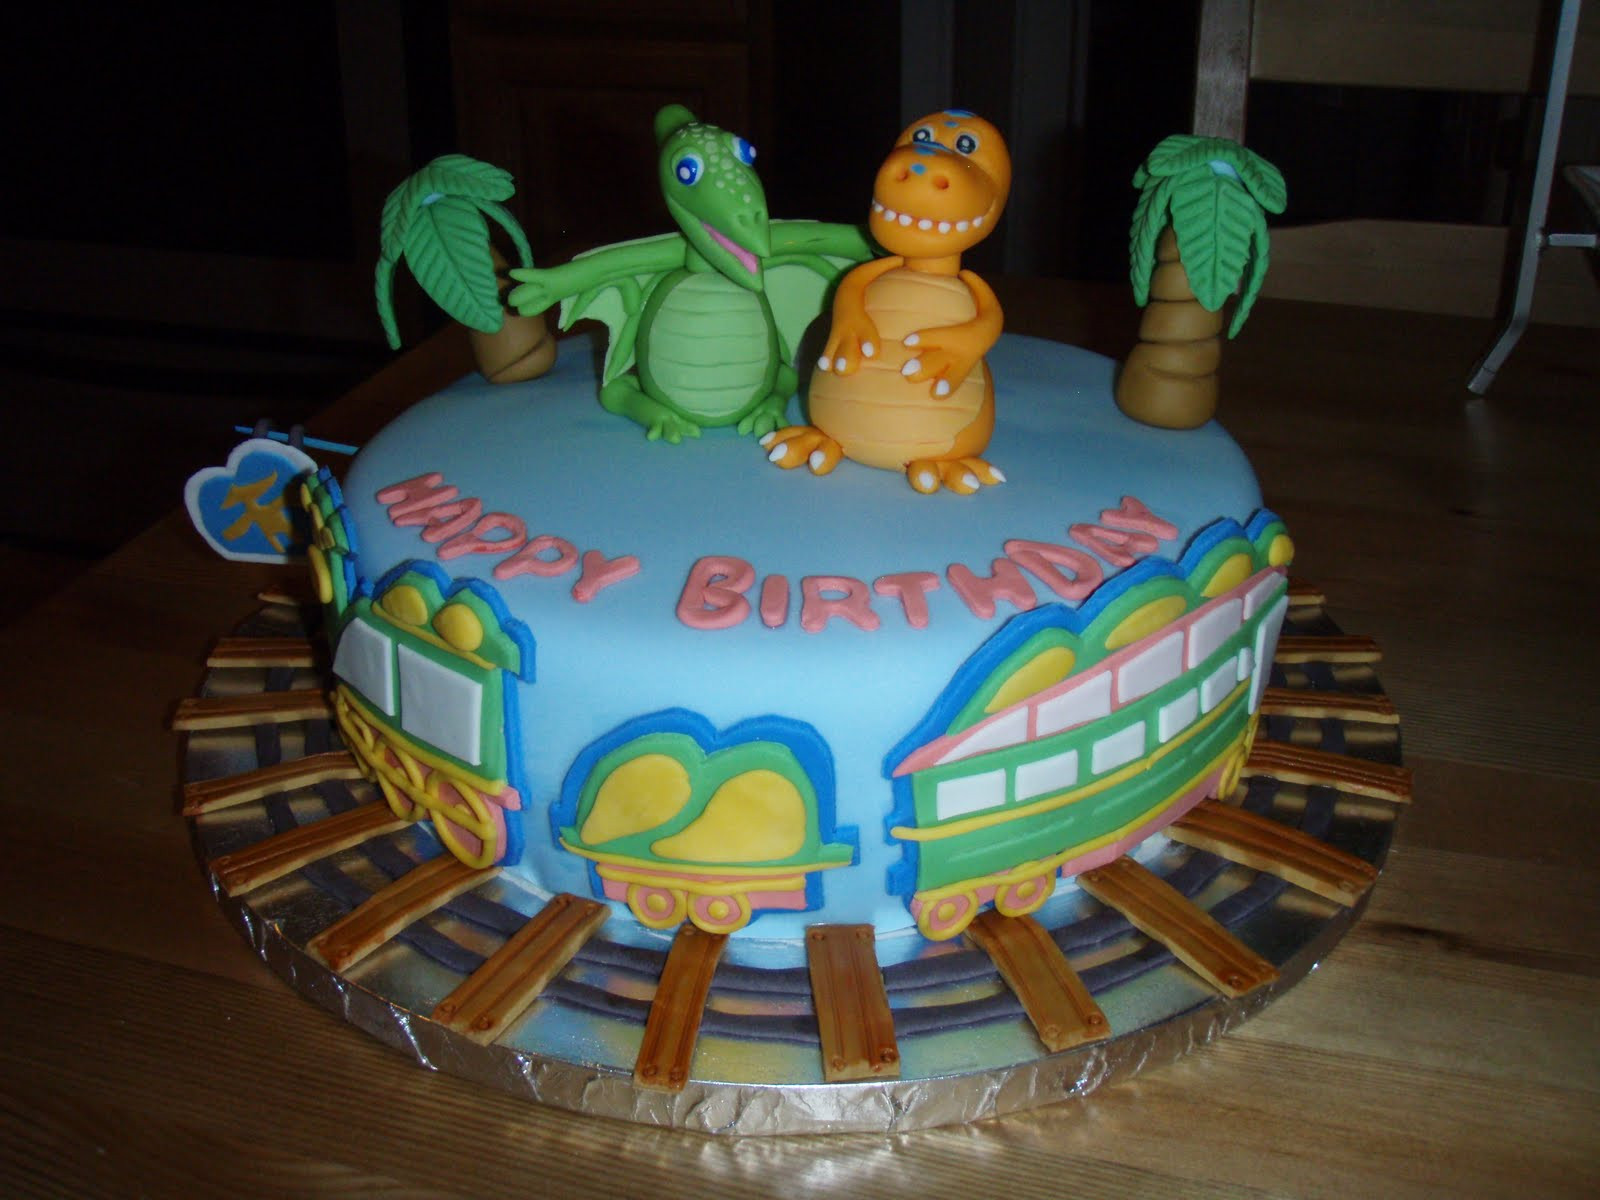 Dinosaur Train Birthday Cake
 For Batter or For Worse 4th Birthday Cake Dinosaur Train